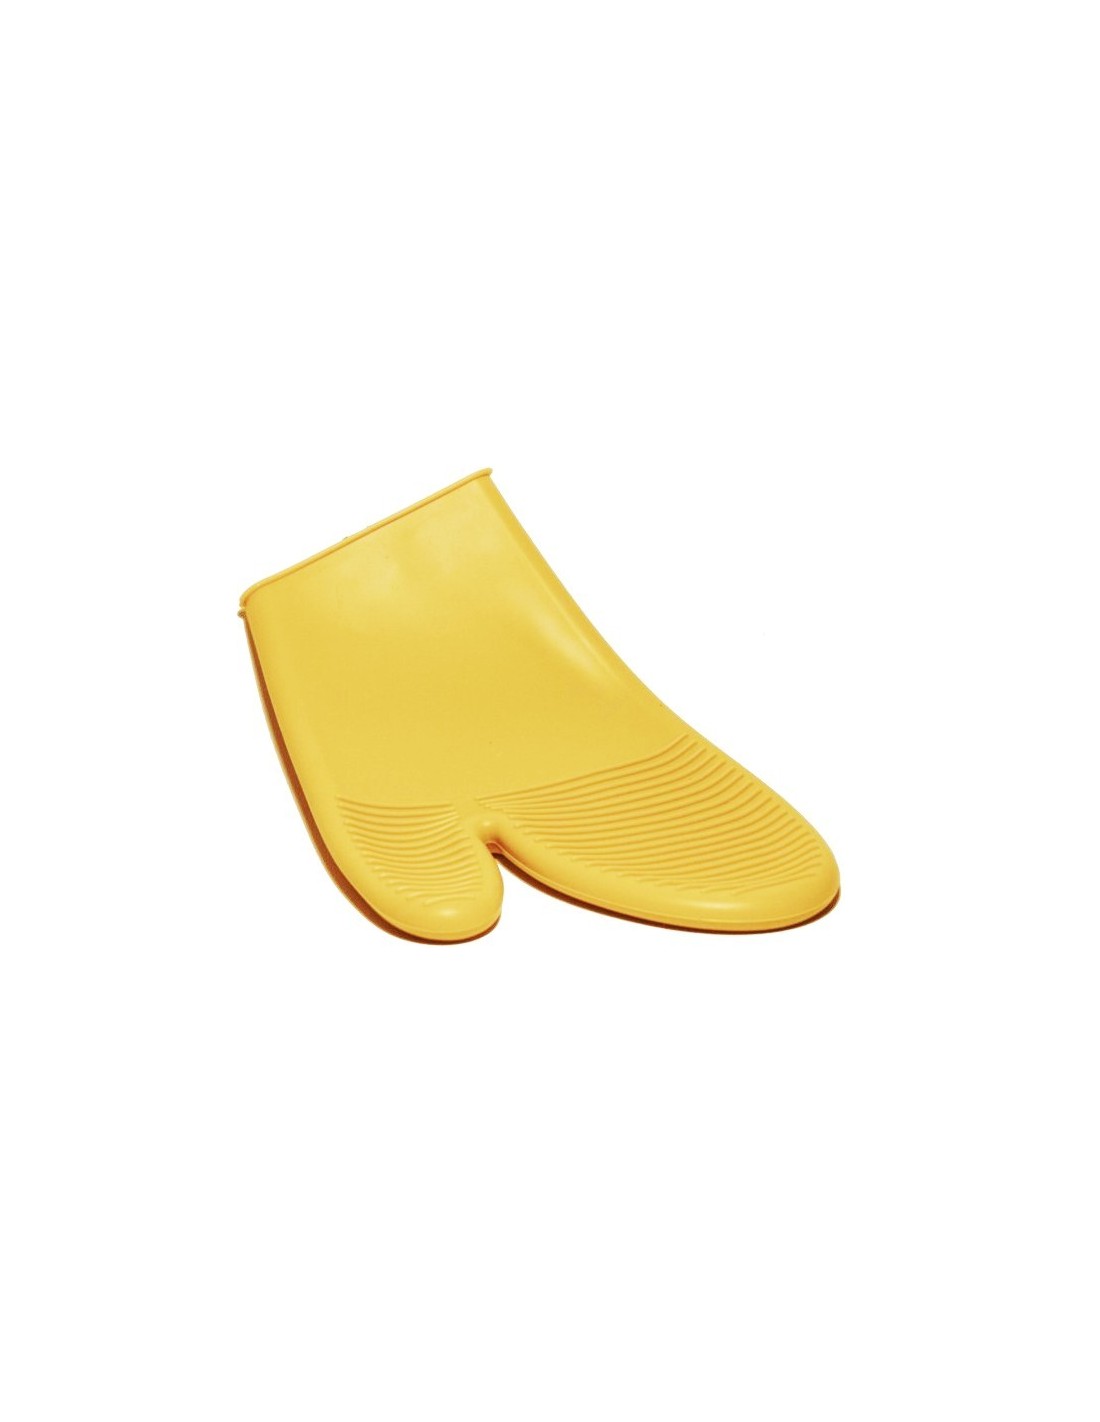 Manopla de silicona color amarillo para utensilio de cocina